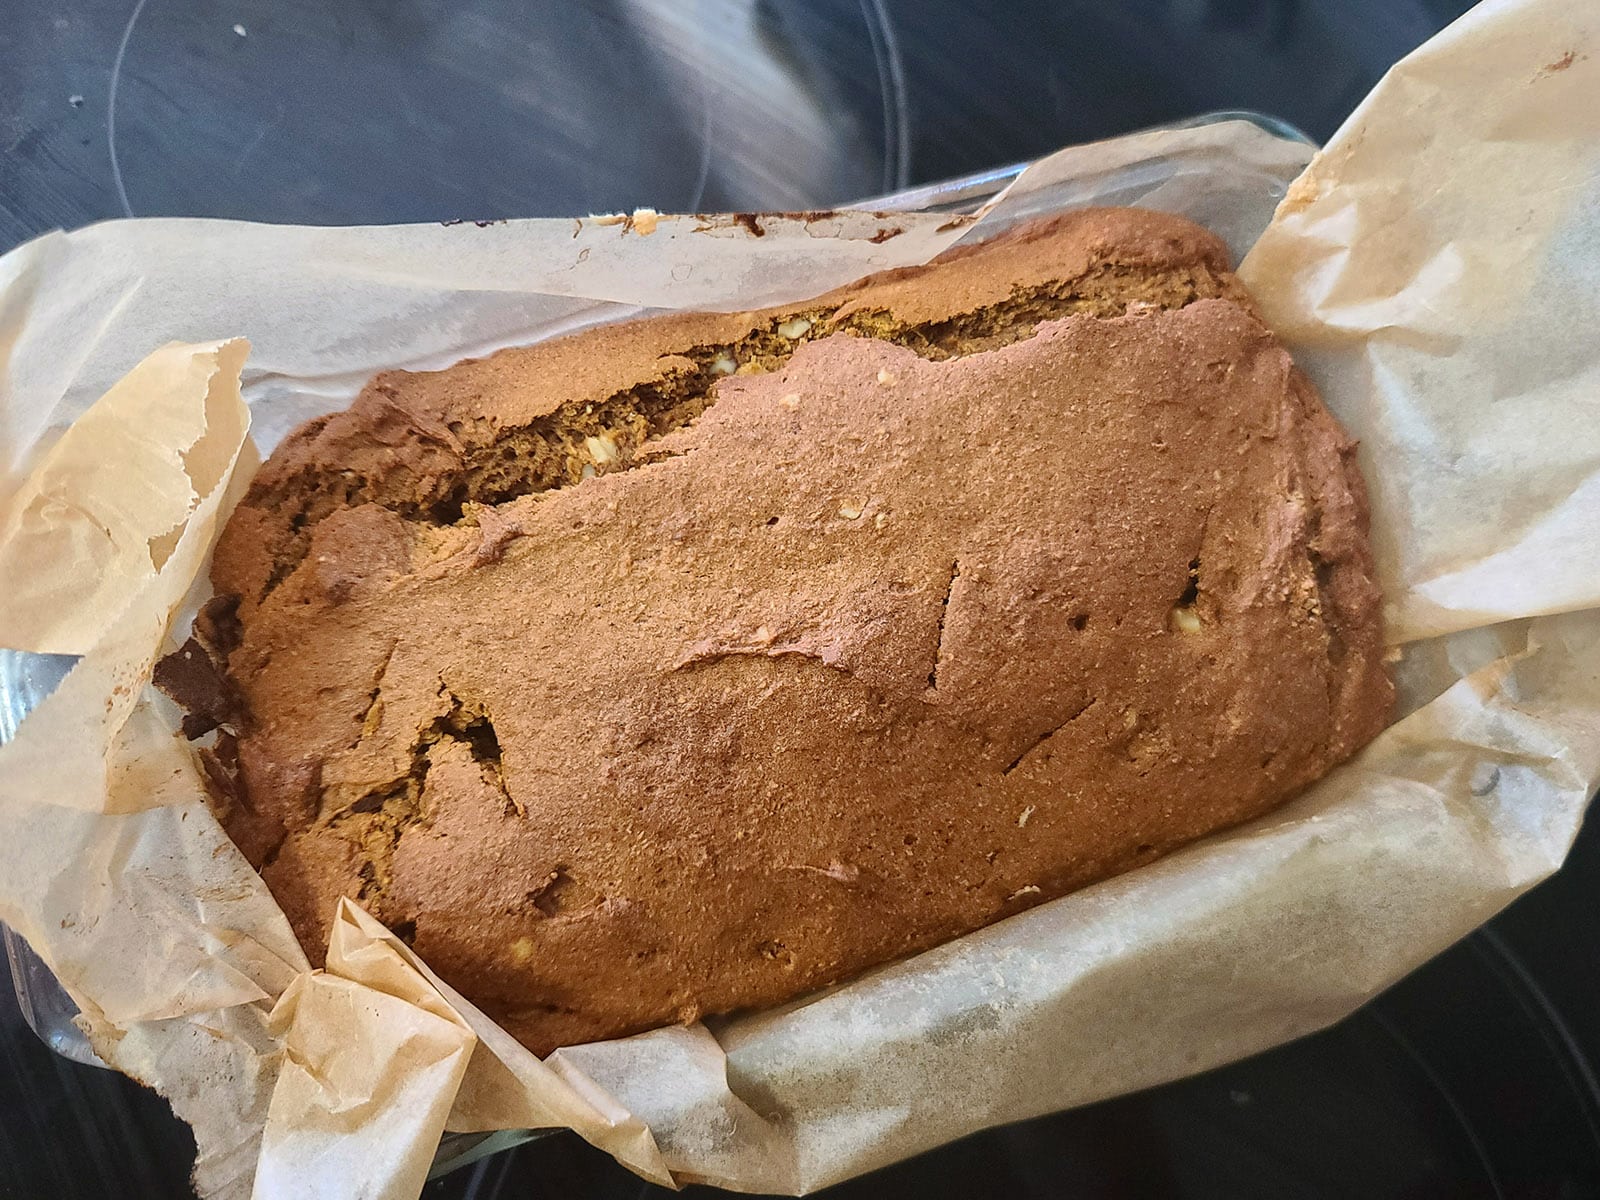 A freshly baked loaf of gluten free pumpkin bread, still in the pan.